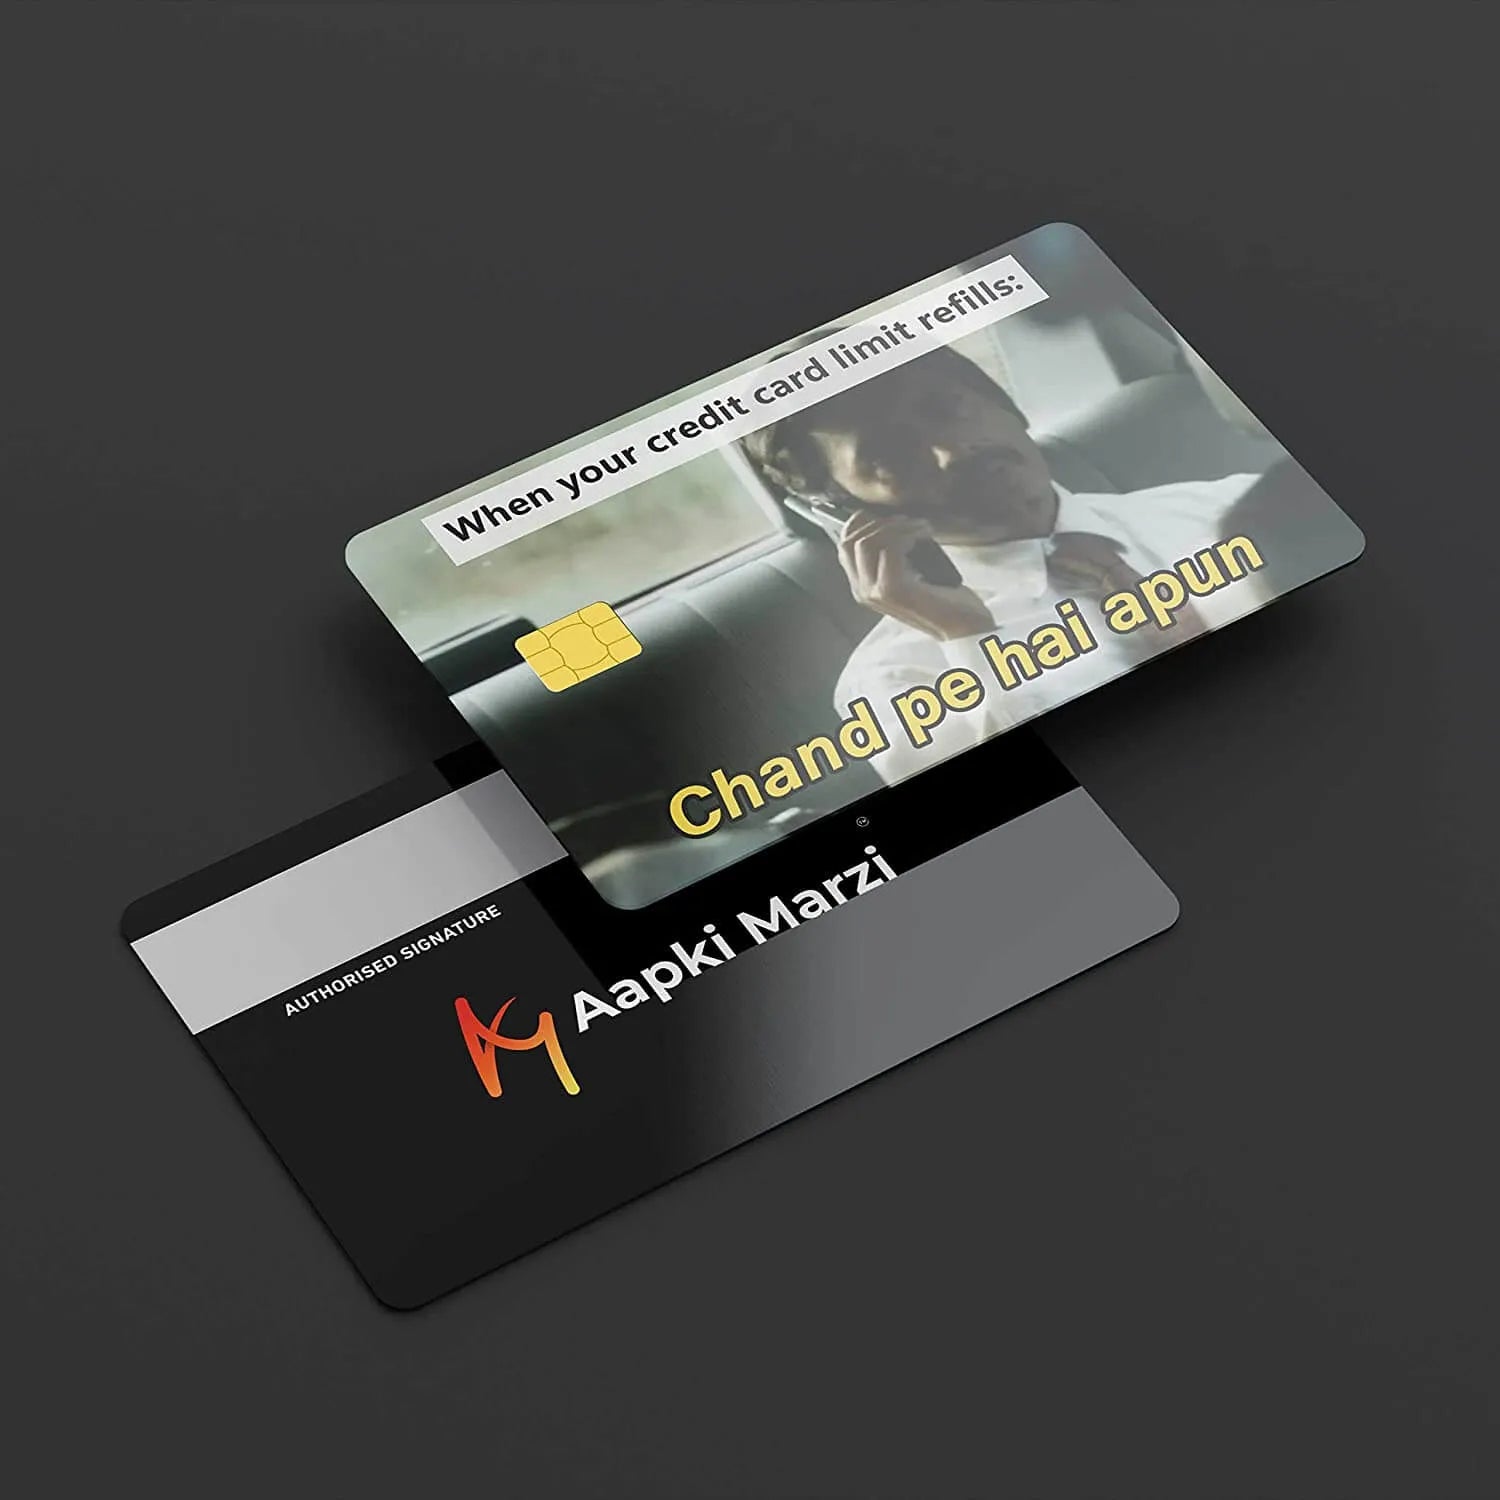 Chand Pe hai Apun credit card skins